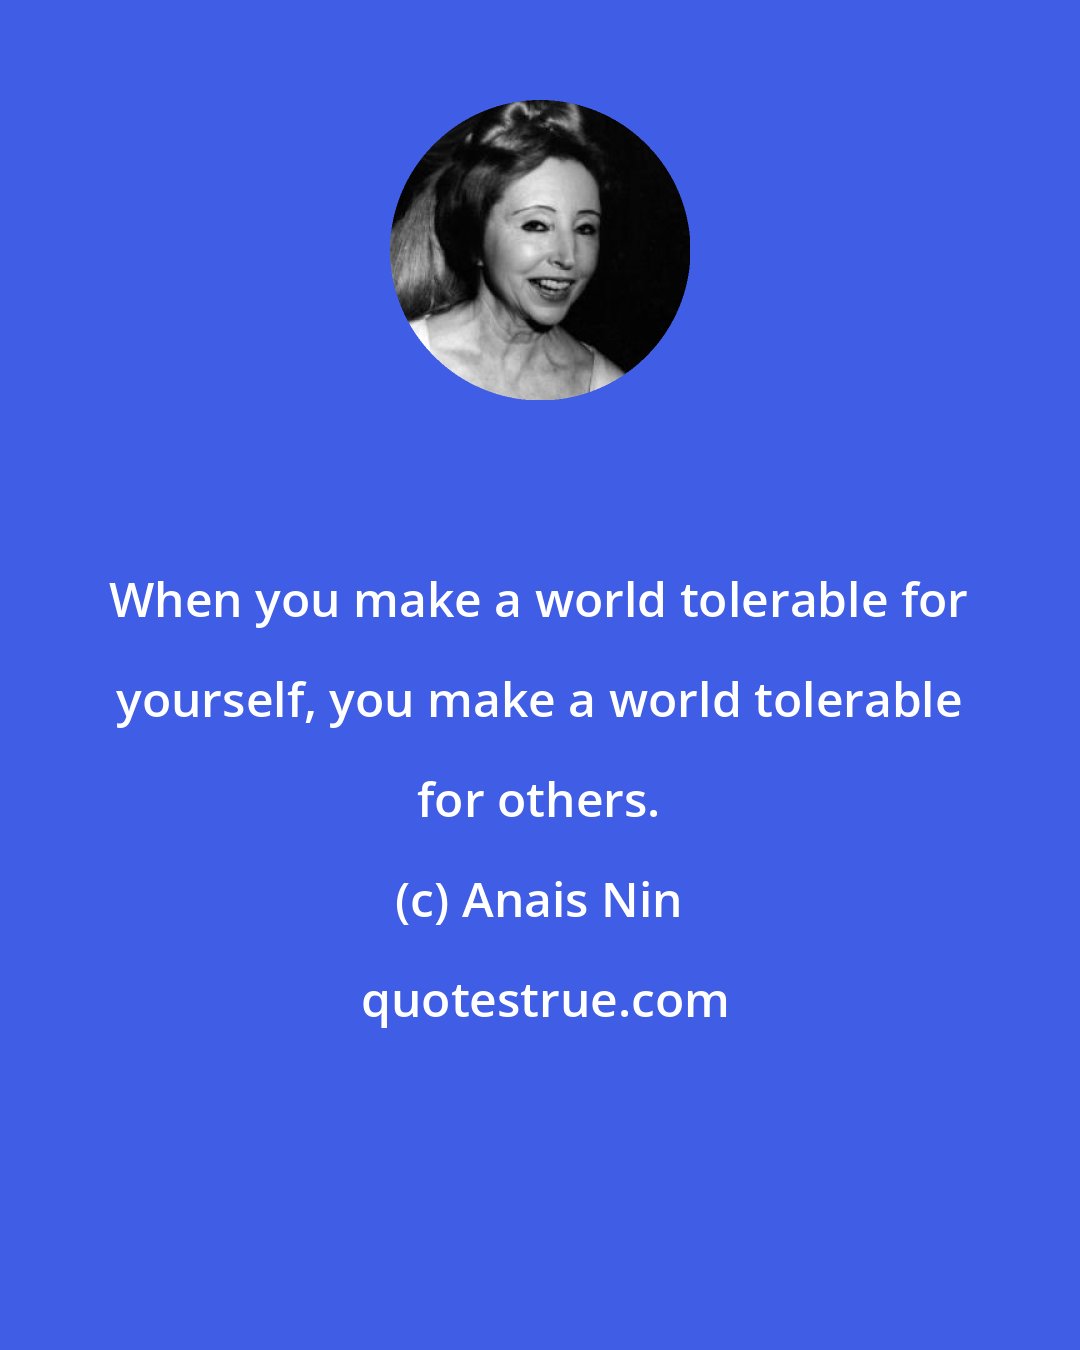 Anais Nin: When you make a world tolerable for yourself, you make a world tolerable for others.